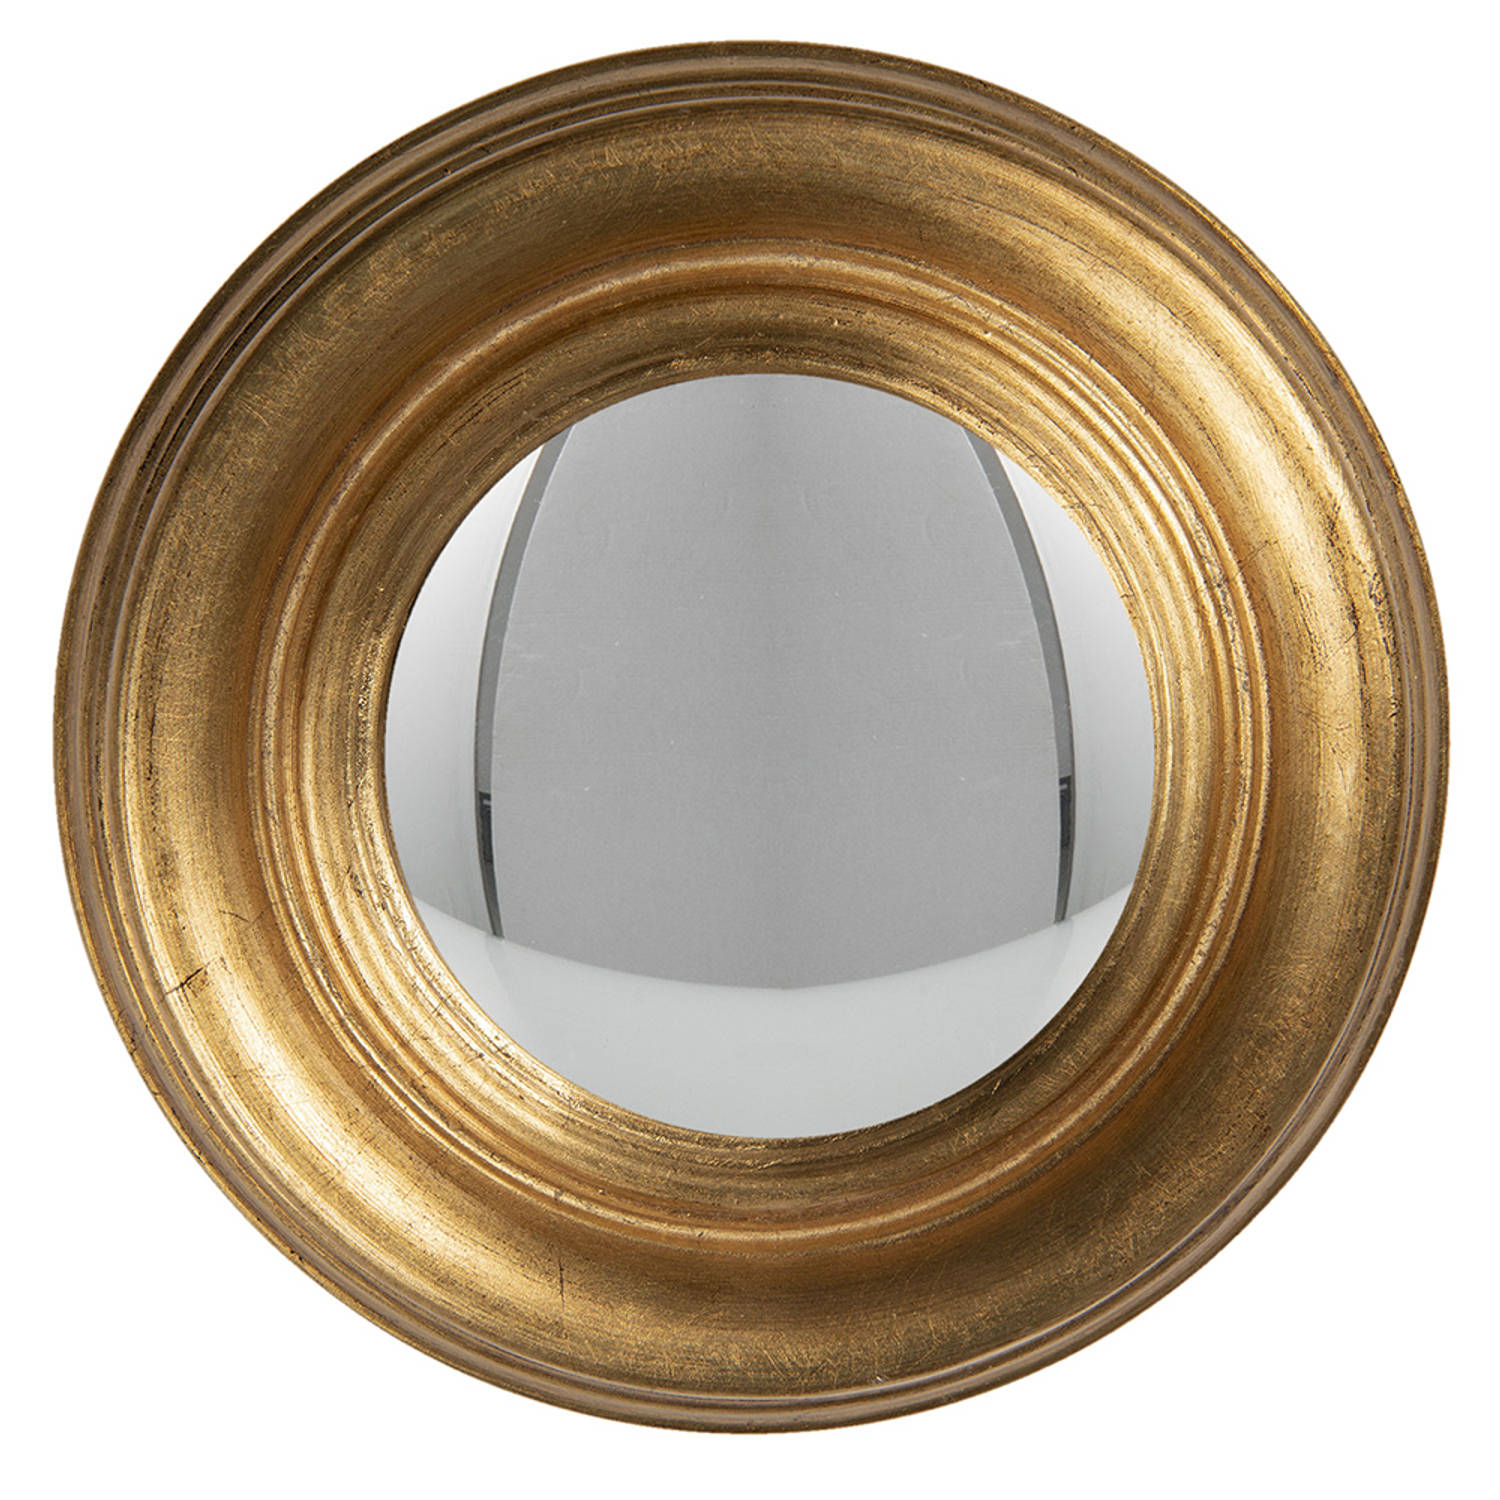 HAES DECO Bolle ronde Spiegel Goudkleurig Ø 24x3 cm Hout-Glas Wandspiegel, Spiegel rond, Convex Glas